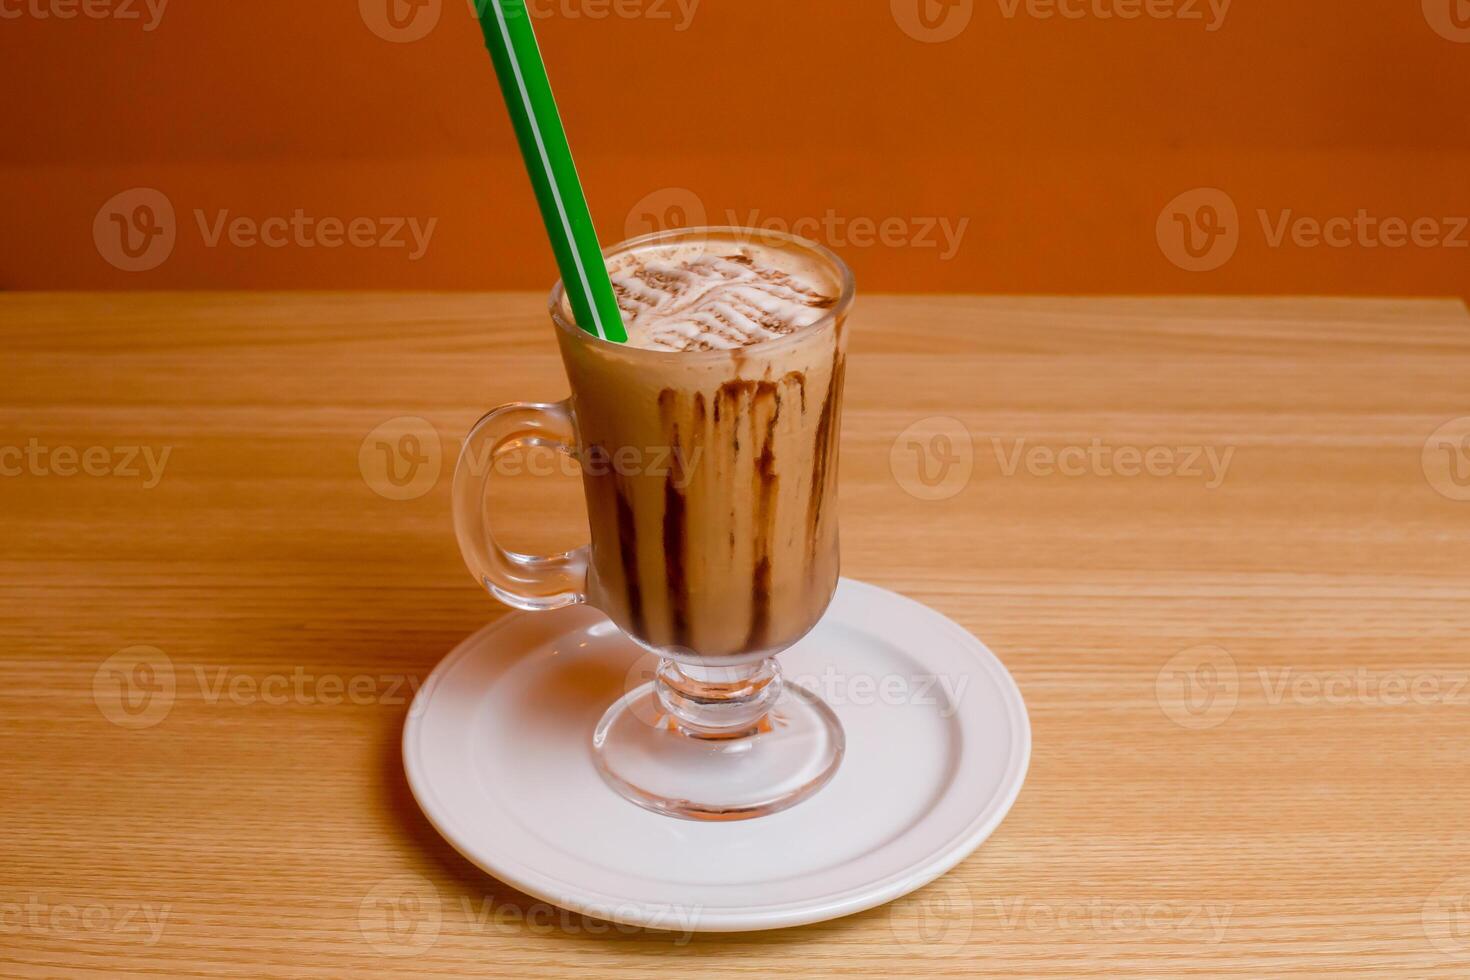 kall kaffe eras i glas isolerat på tabell topp se bangladeshiska dryck foto